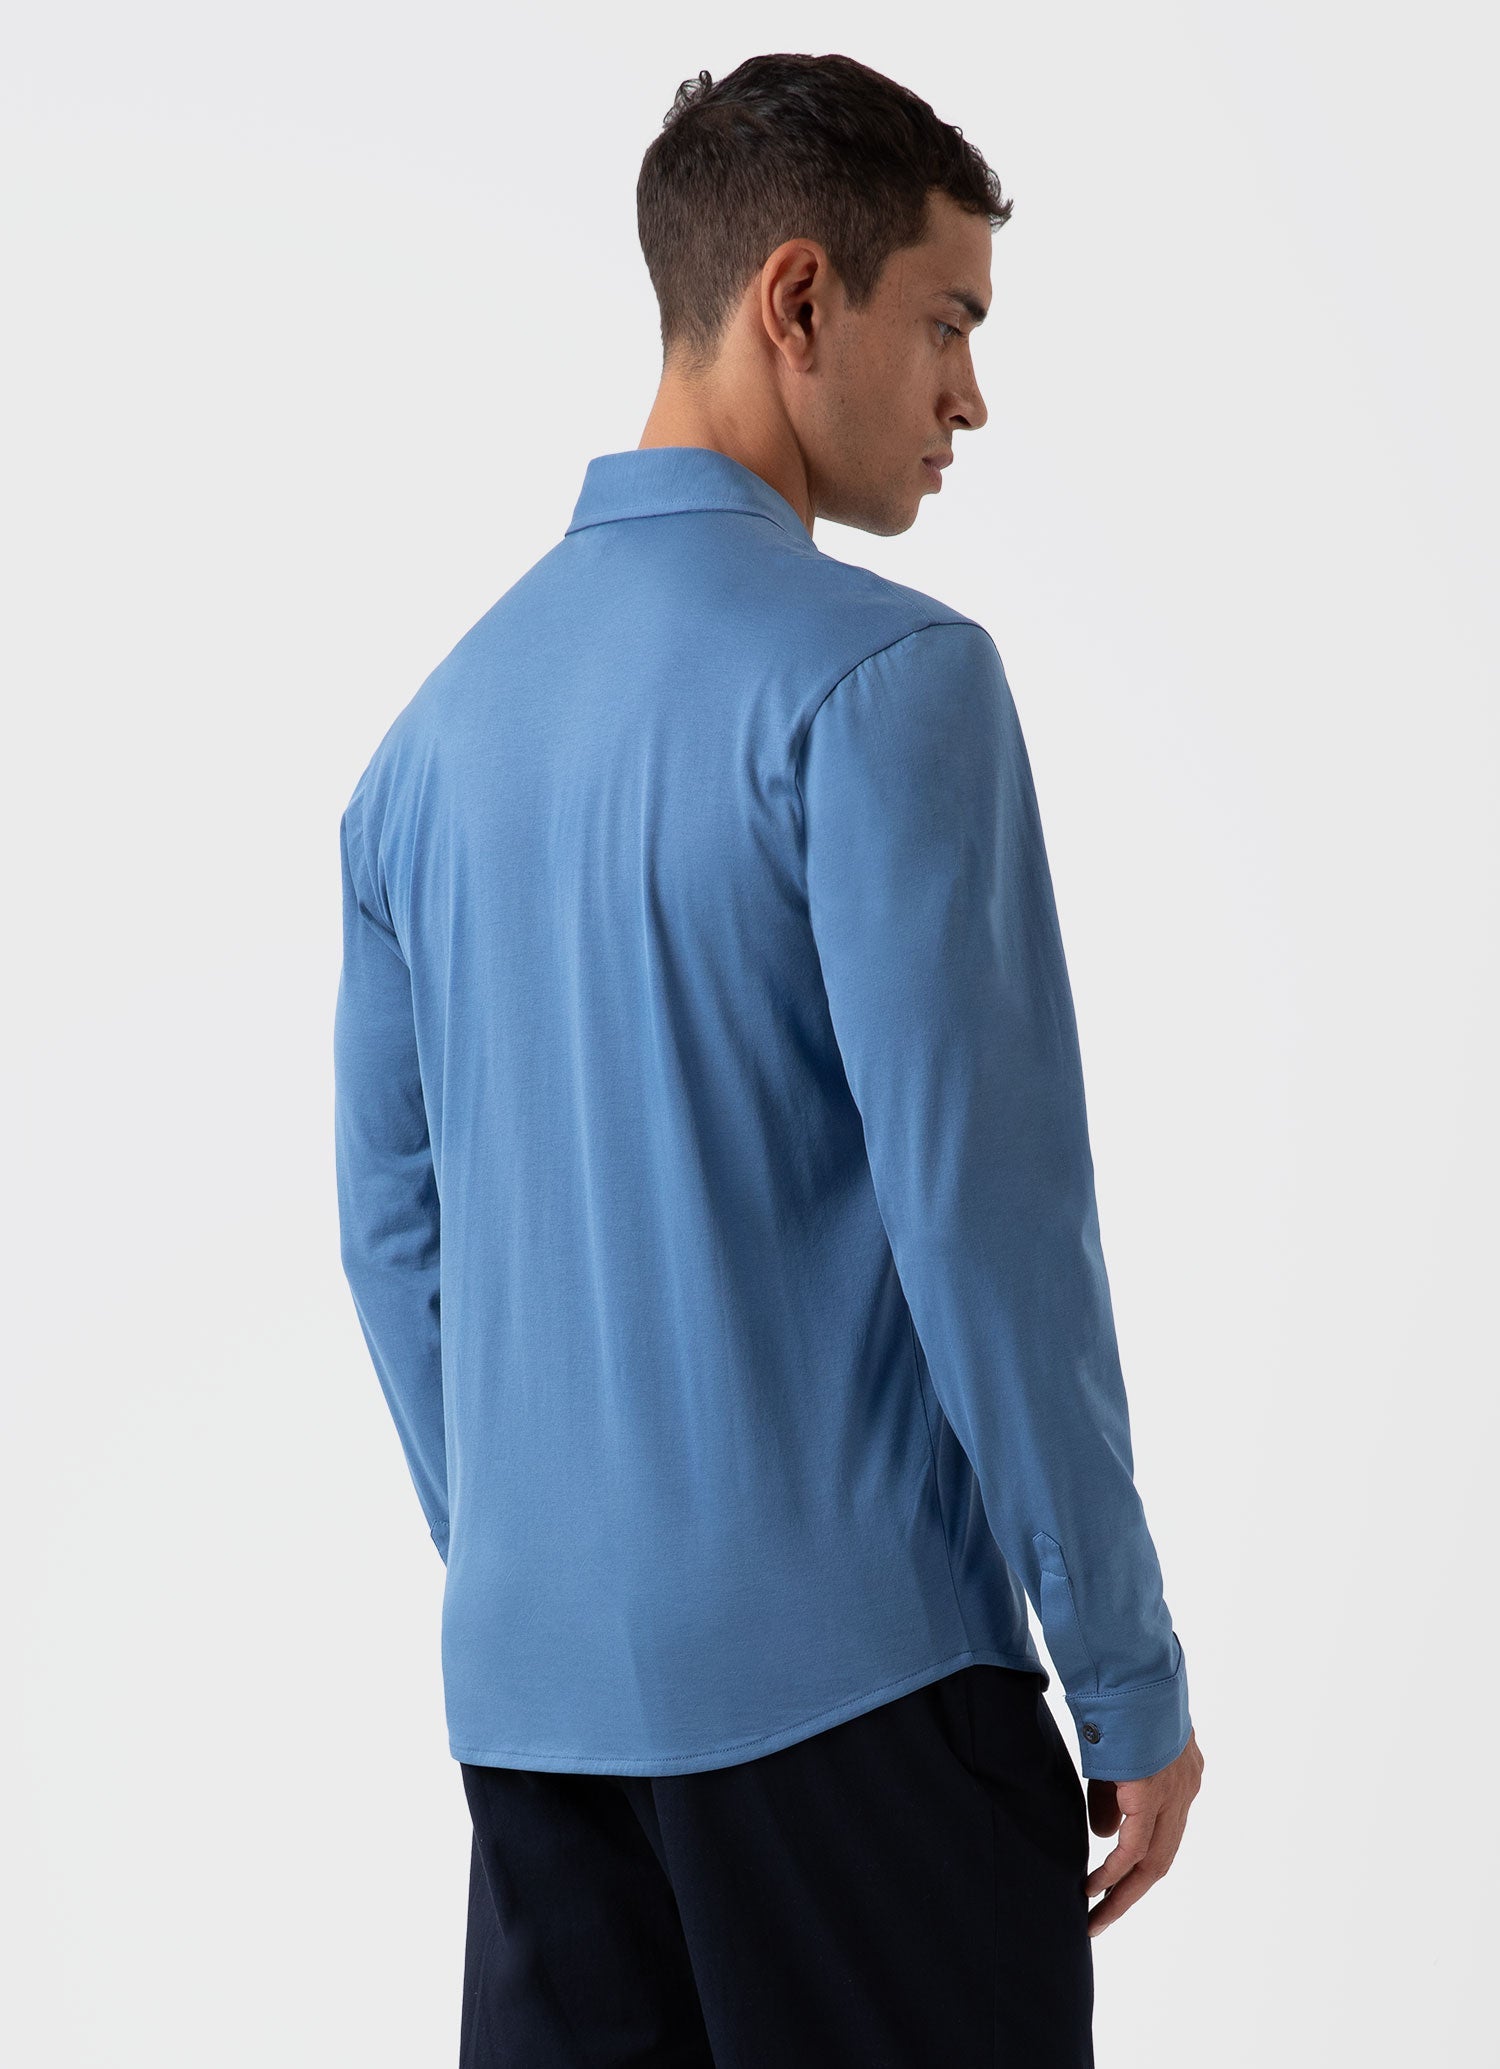 Men's Jersey Shirt in Bluestone